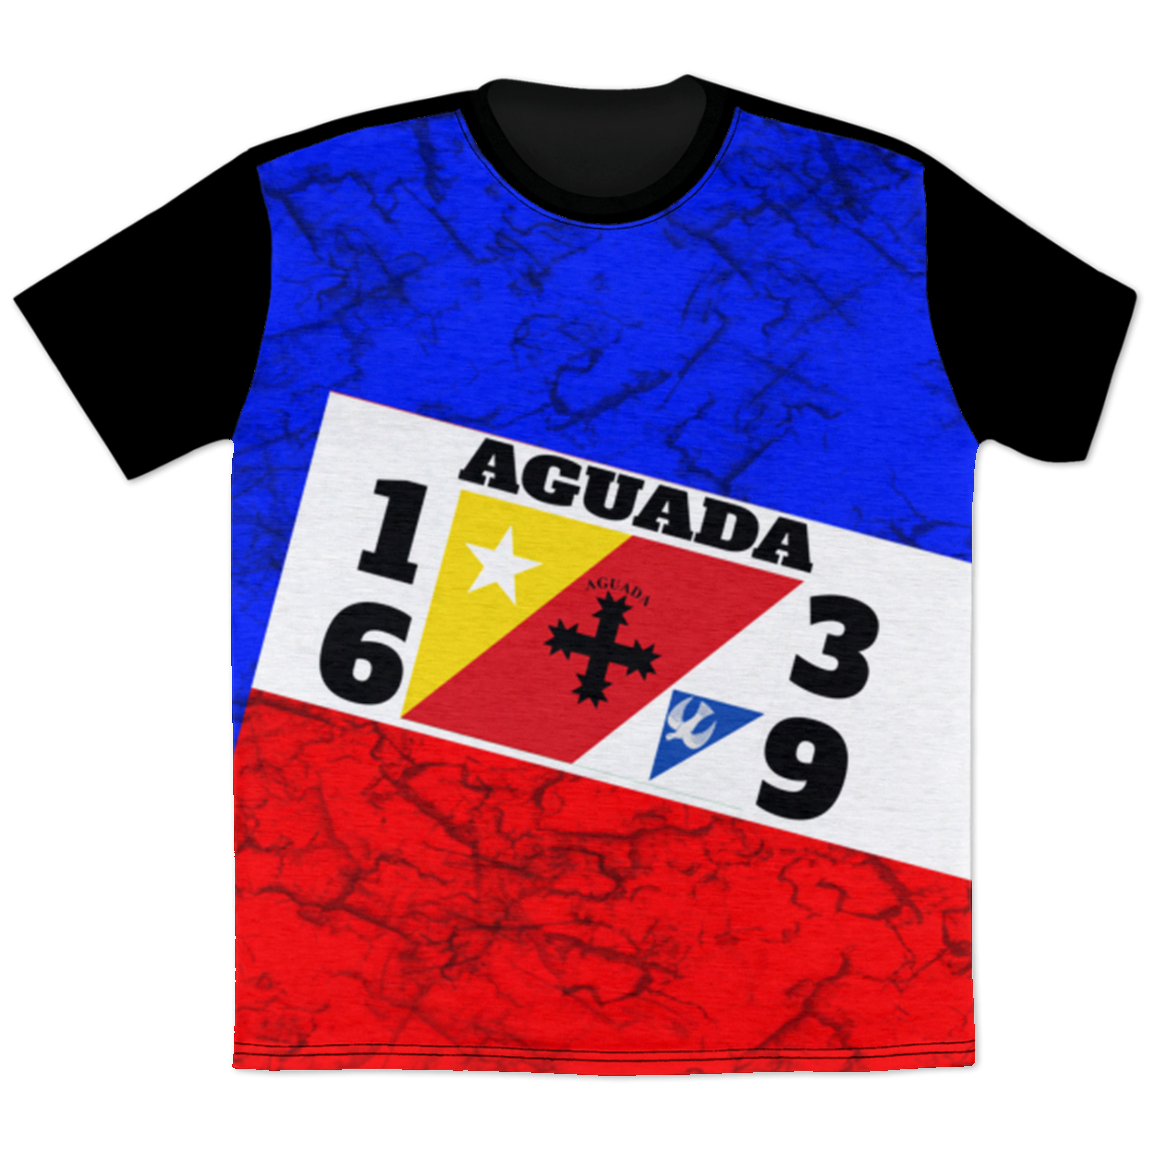 Aguada T-Shirt - Puerto Rican Pride